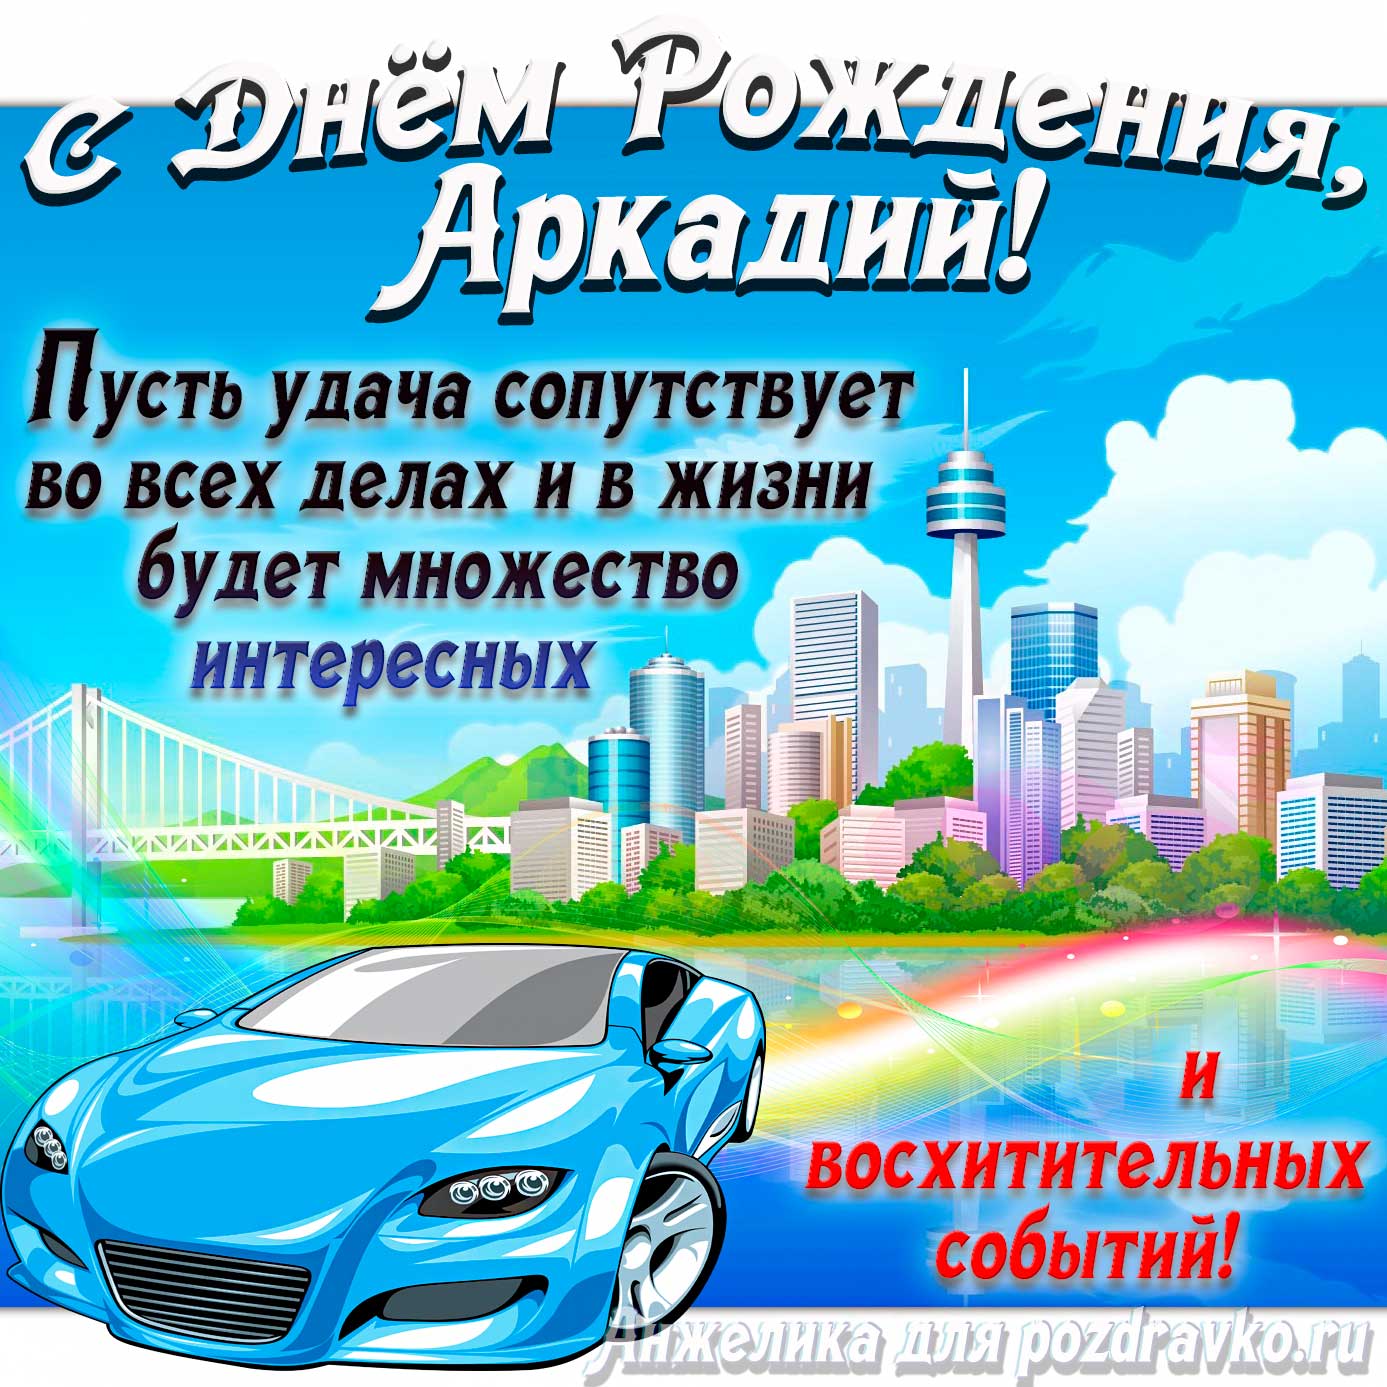 Открытка - с Днём Рождения Аркадий с голубой машиной и пожеланием. Скачать бесплатно или отправить картинку.